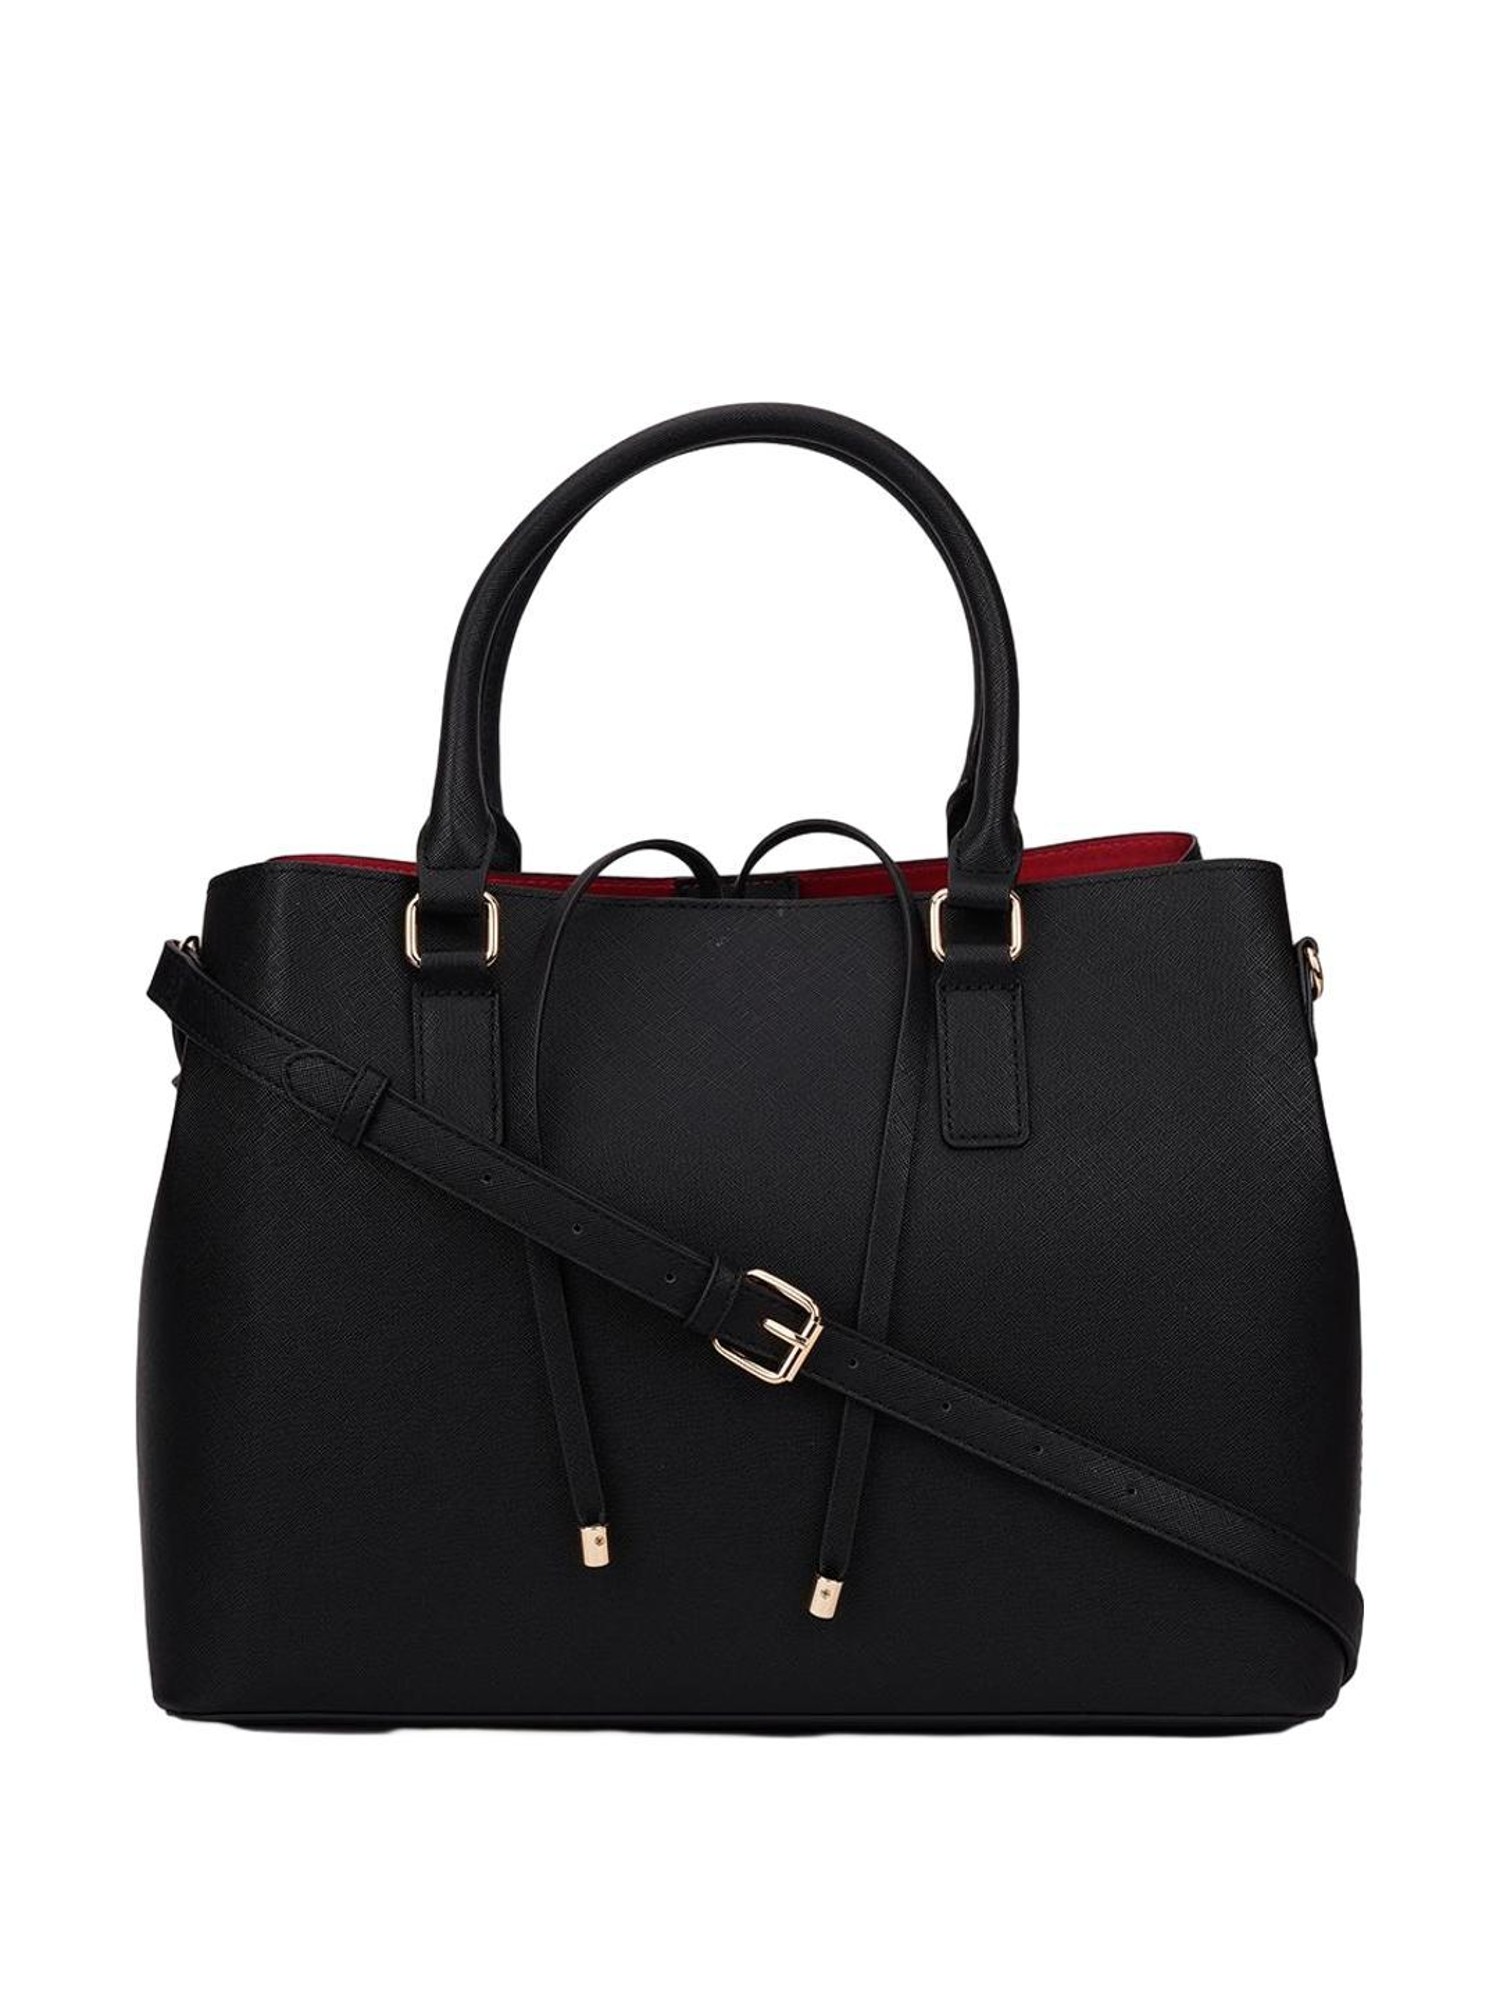 Buy ALDO Women Beige Handbag Other Beige Online @ Best Price in India |  Flipkart.com